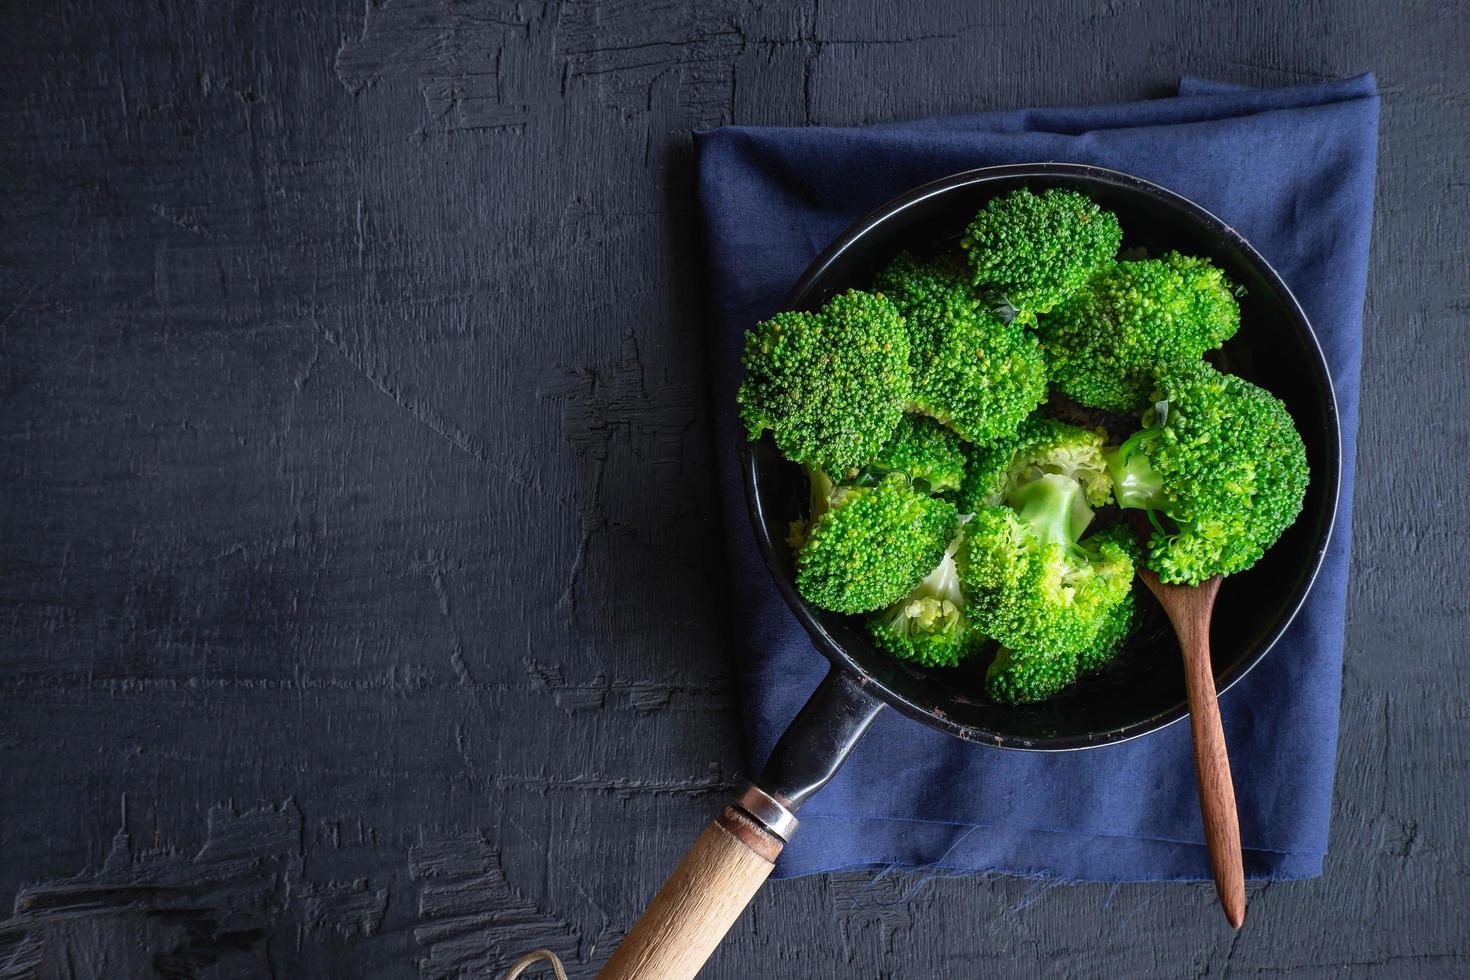 kochen Sie frisches Brokkoli-Gemüse Biolebensmittel foto